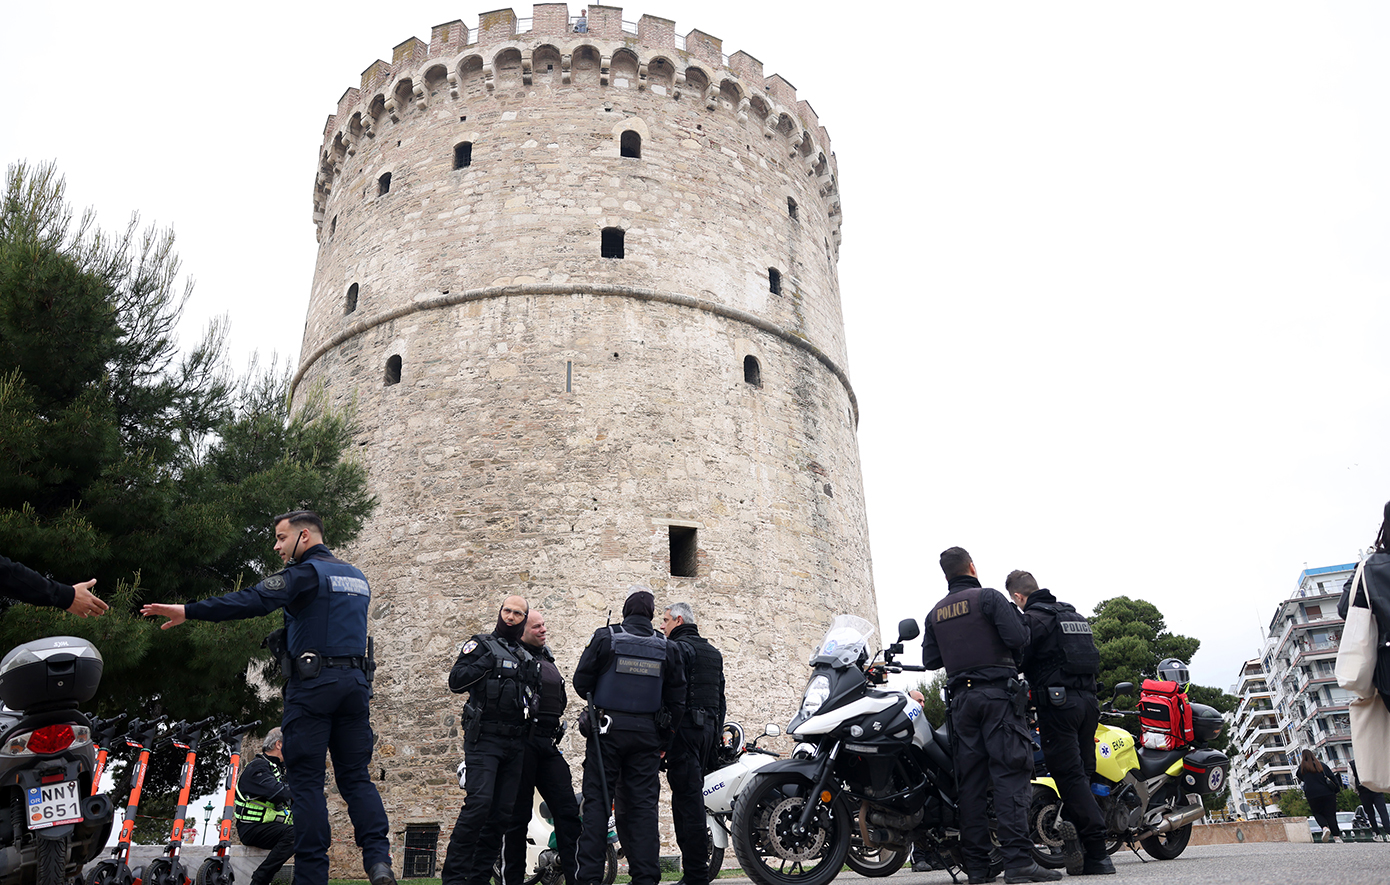 Περίμενε να φύγει ο κόσμος από το μπαλκόνι του Λευκού Πύργου, πήρε φόρα και πήδηξε στο κενό – Πώς έγινε η τραγωδία στη Θεσσαλονίκη